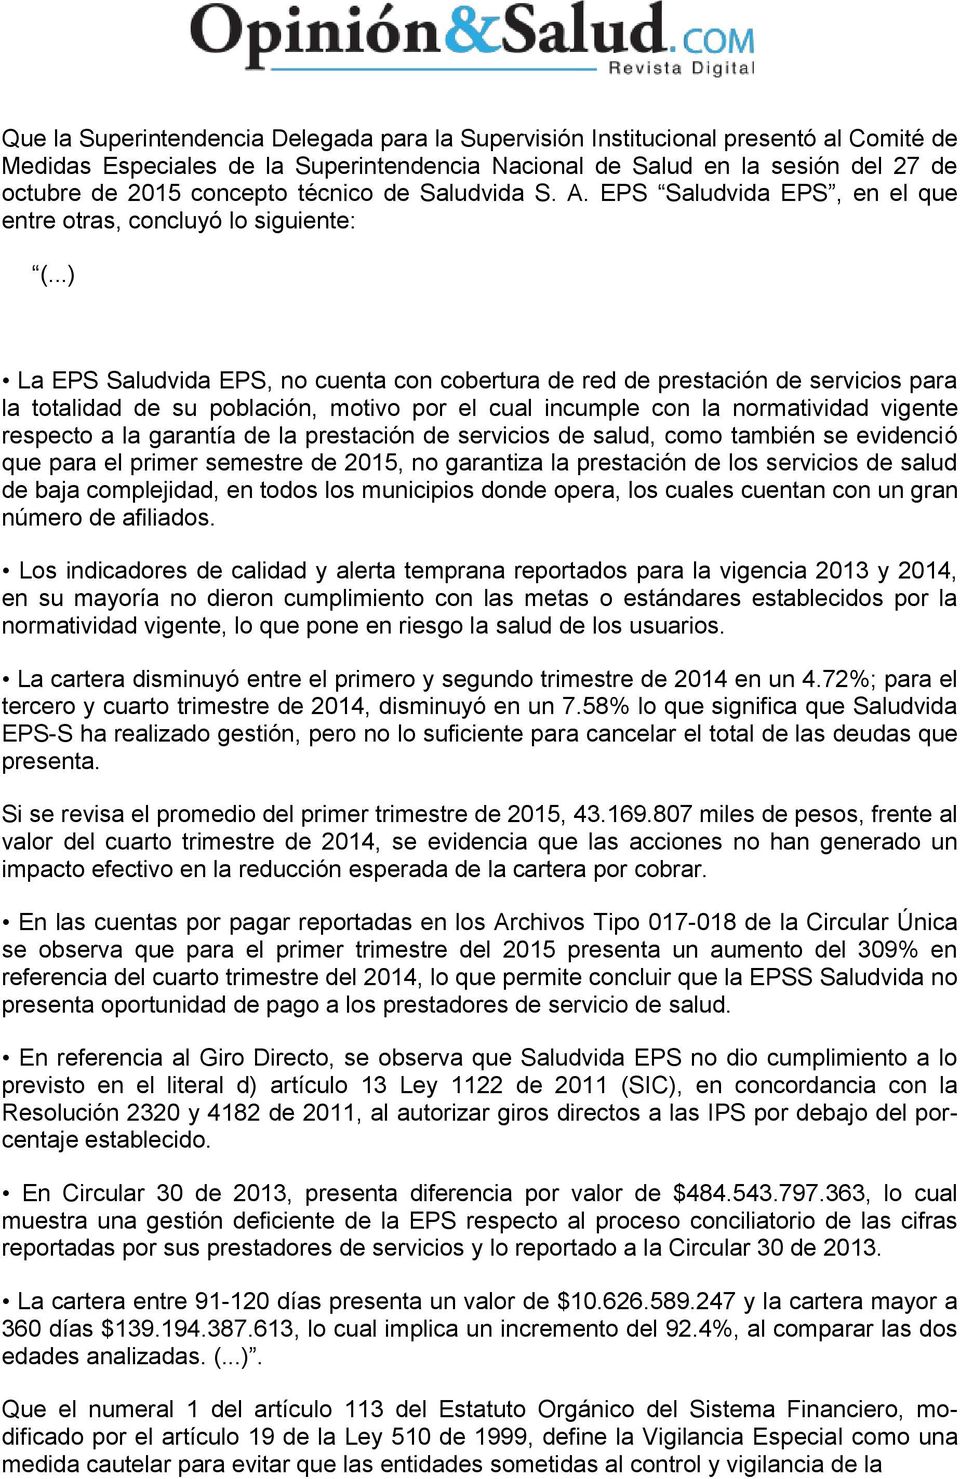 ..) La EPS Saludvida EPS, no cuenta con cobertura de red de prestación de servicios para la totalidad de su población, motivo por el cual incumple con la normatividad vigente respecto a la garantía